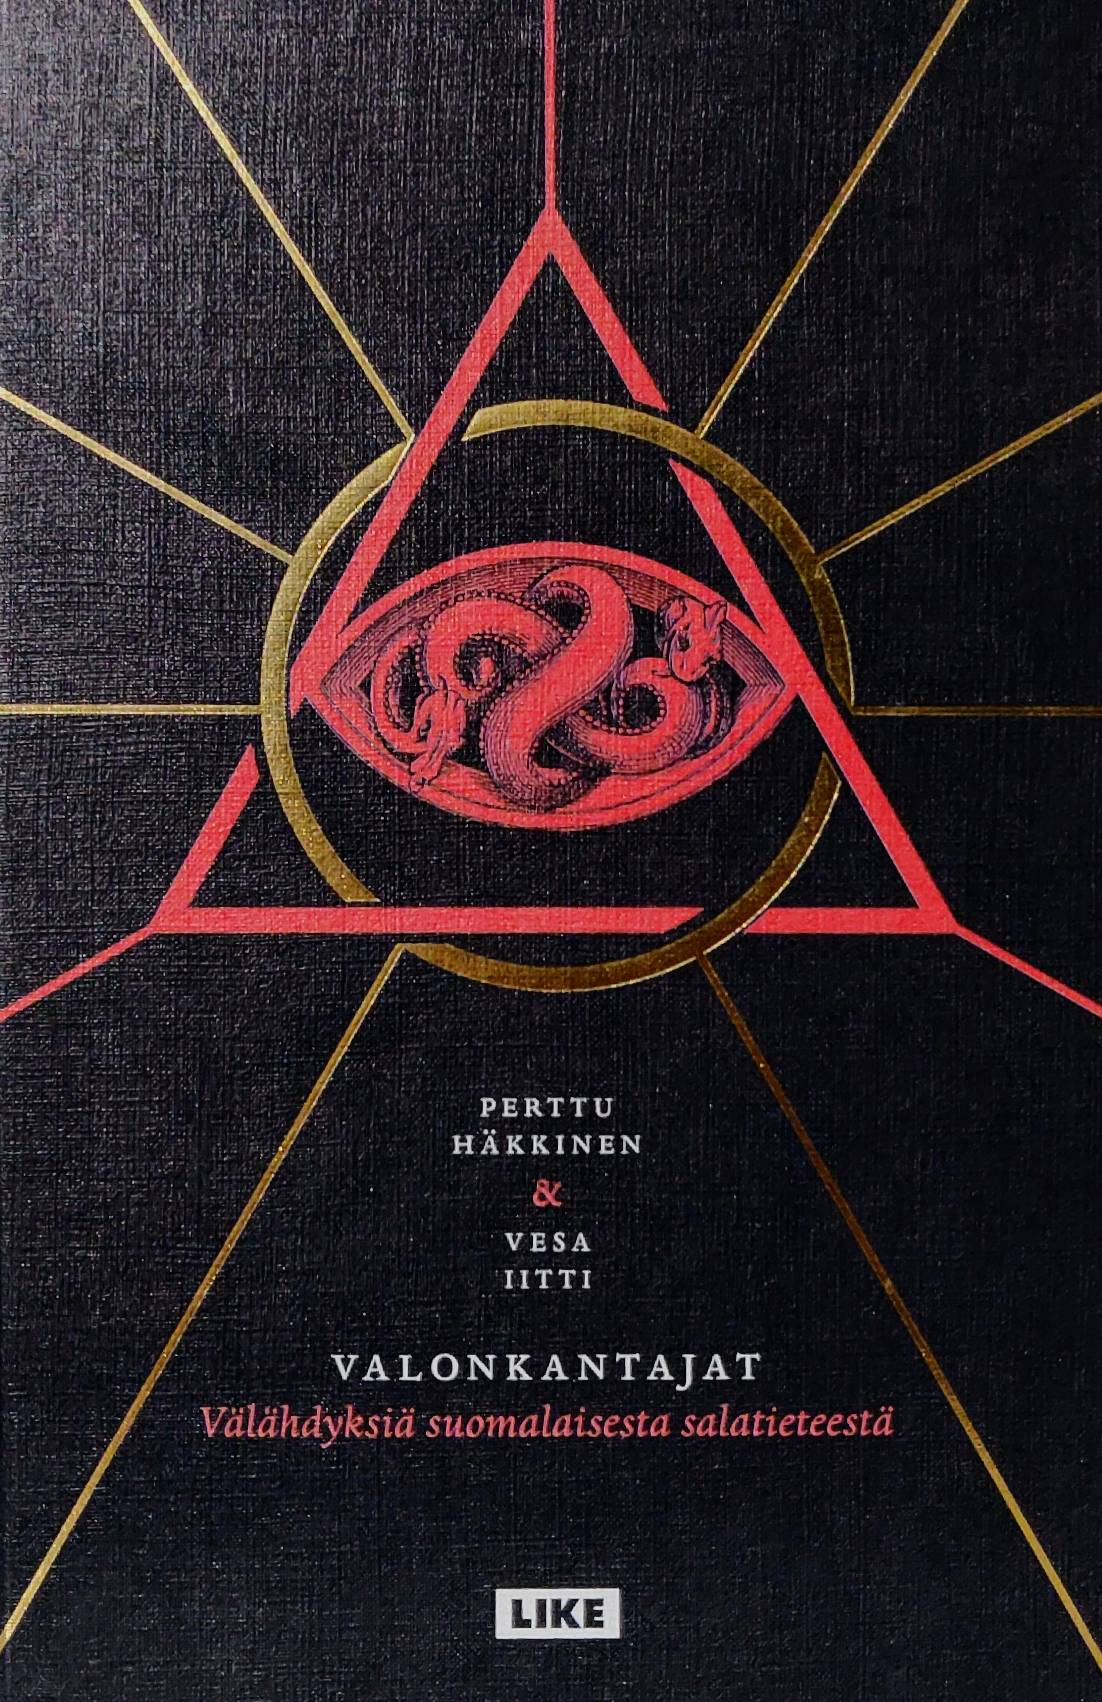 Perttu Häkkinen, Vesa Iitti: Valonkantajat (Hardcover, Finnish language, 2015, Like)